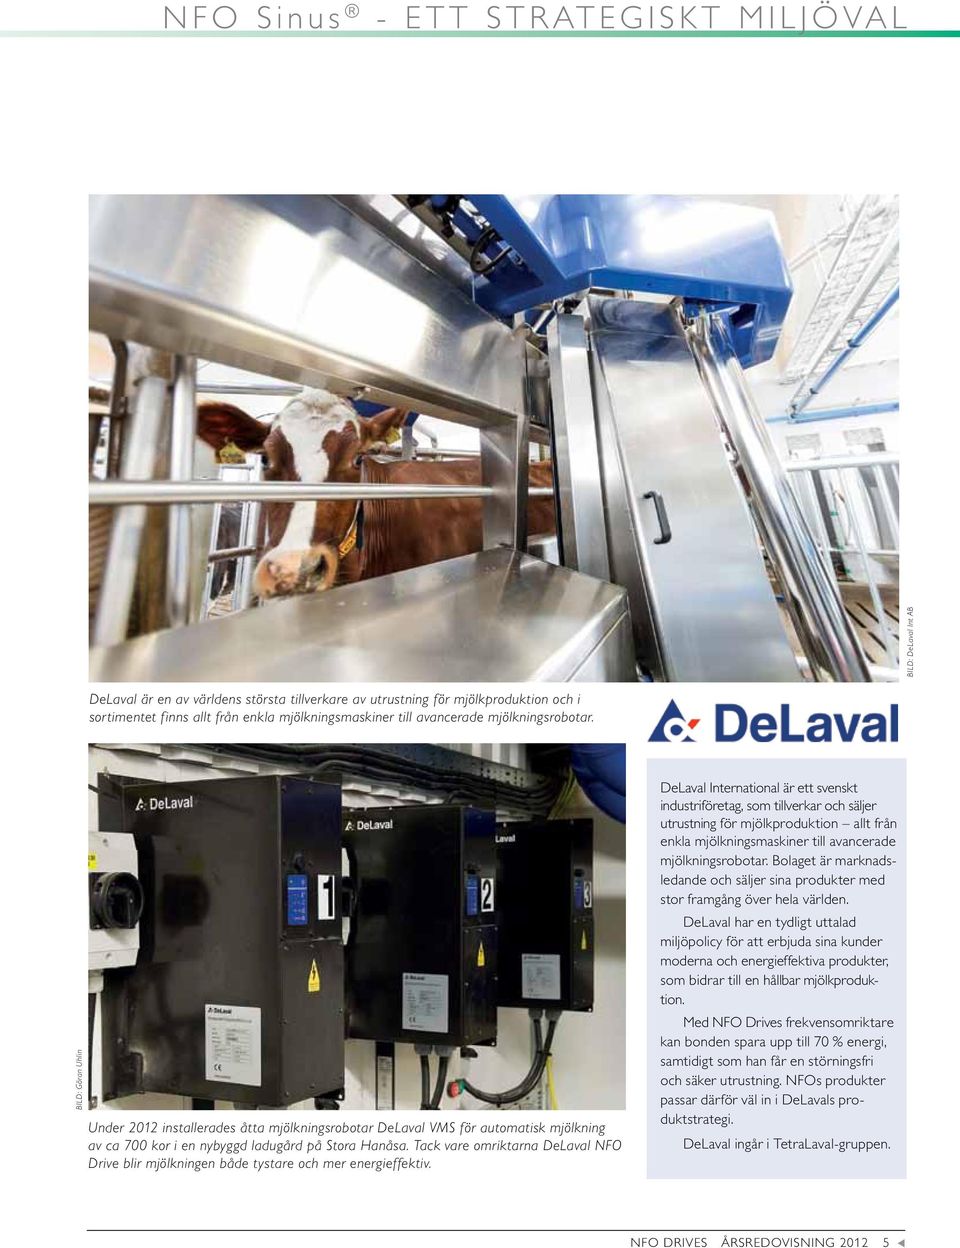 Tack vare omriktarna DeLaval NFO Drive blir mjölkningen både tystare och mer energieffektiv.